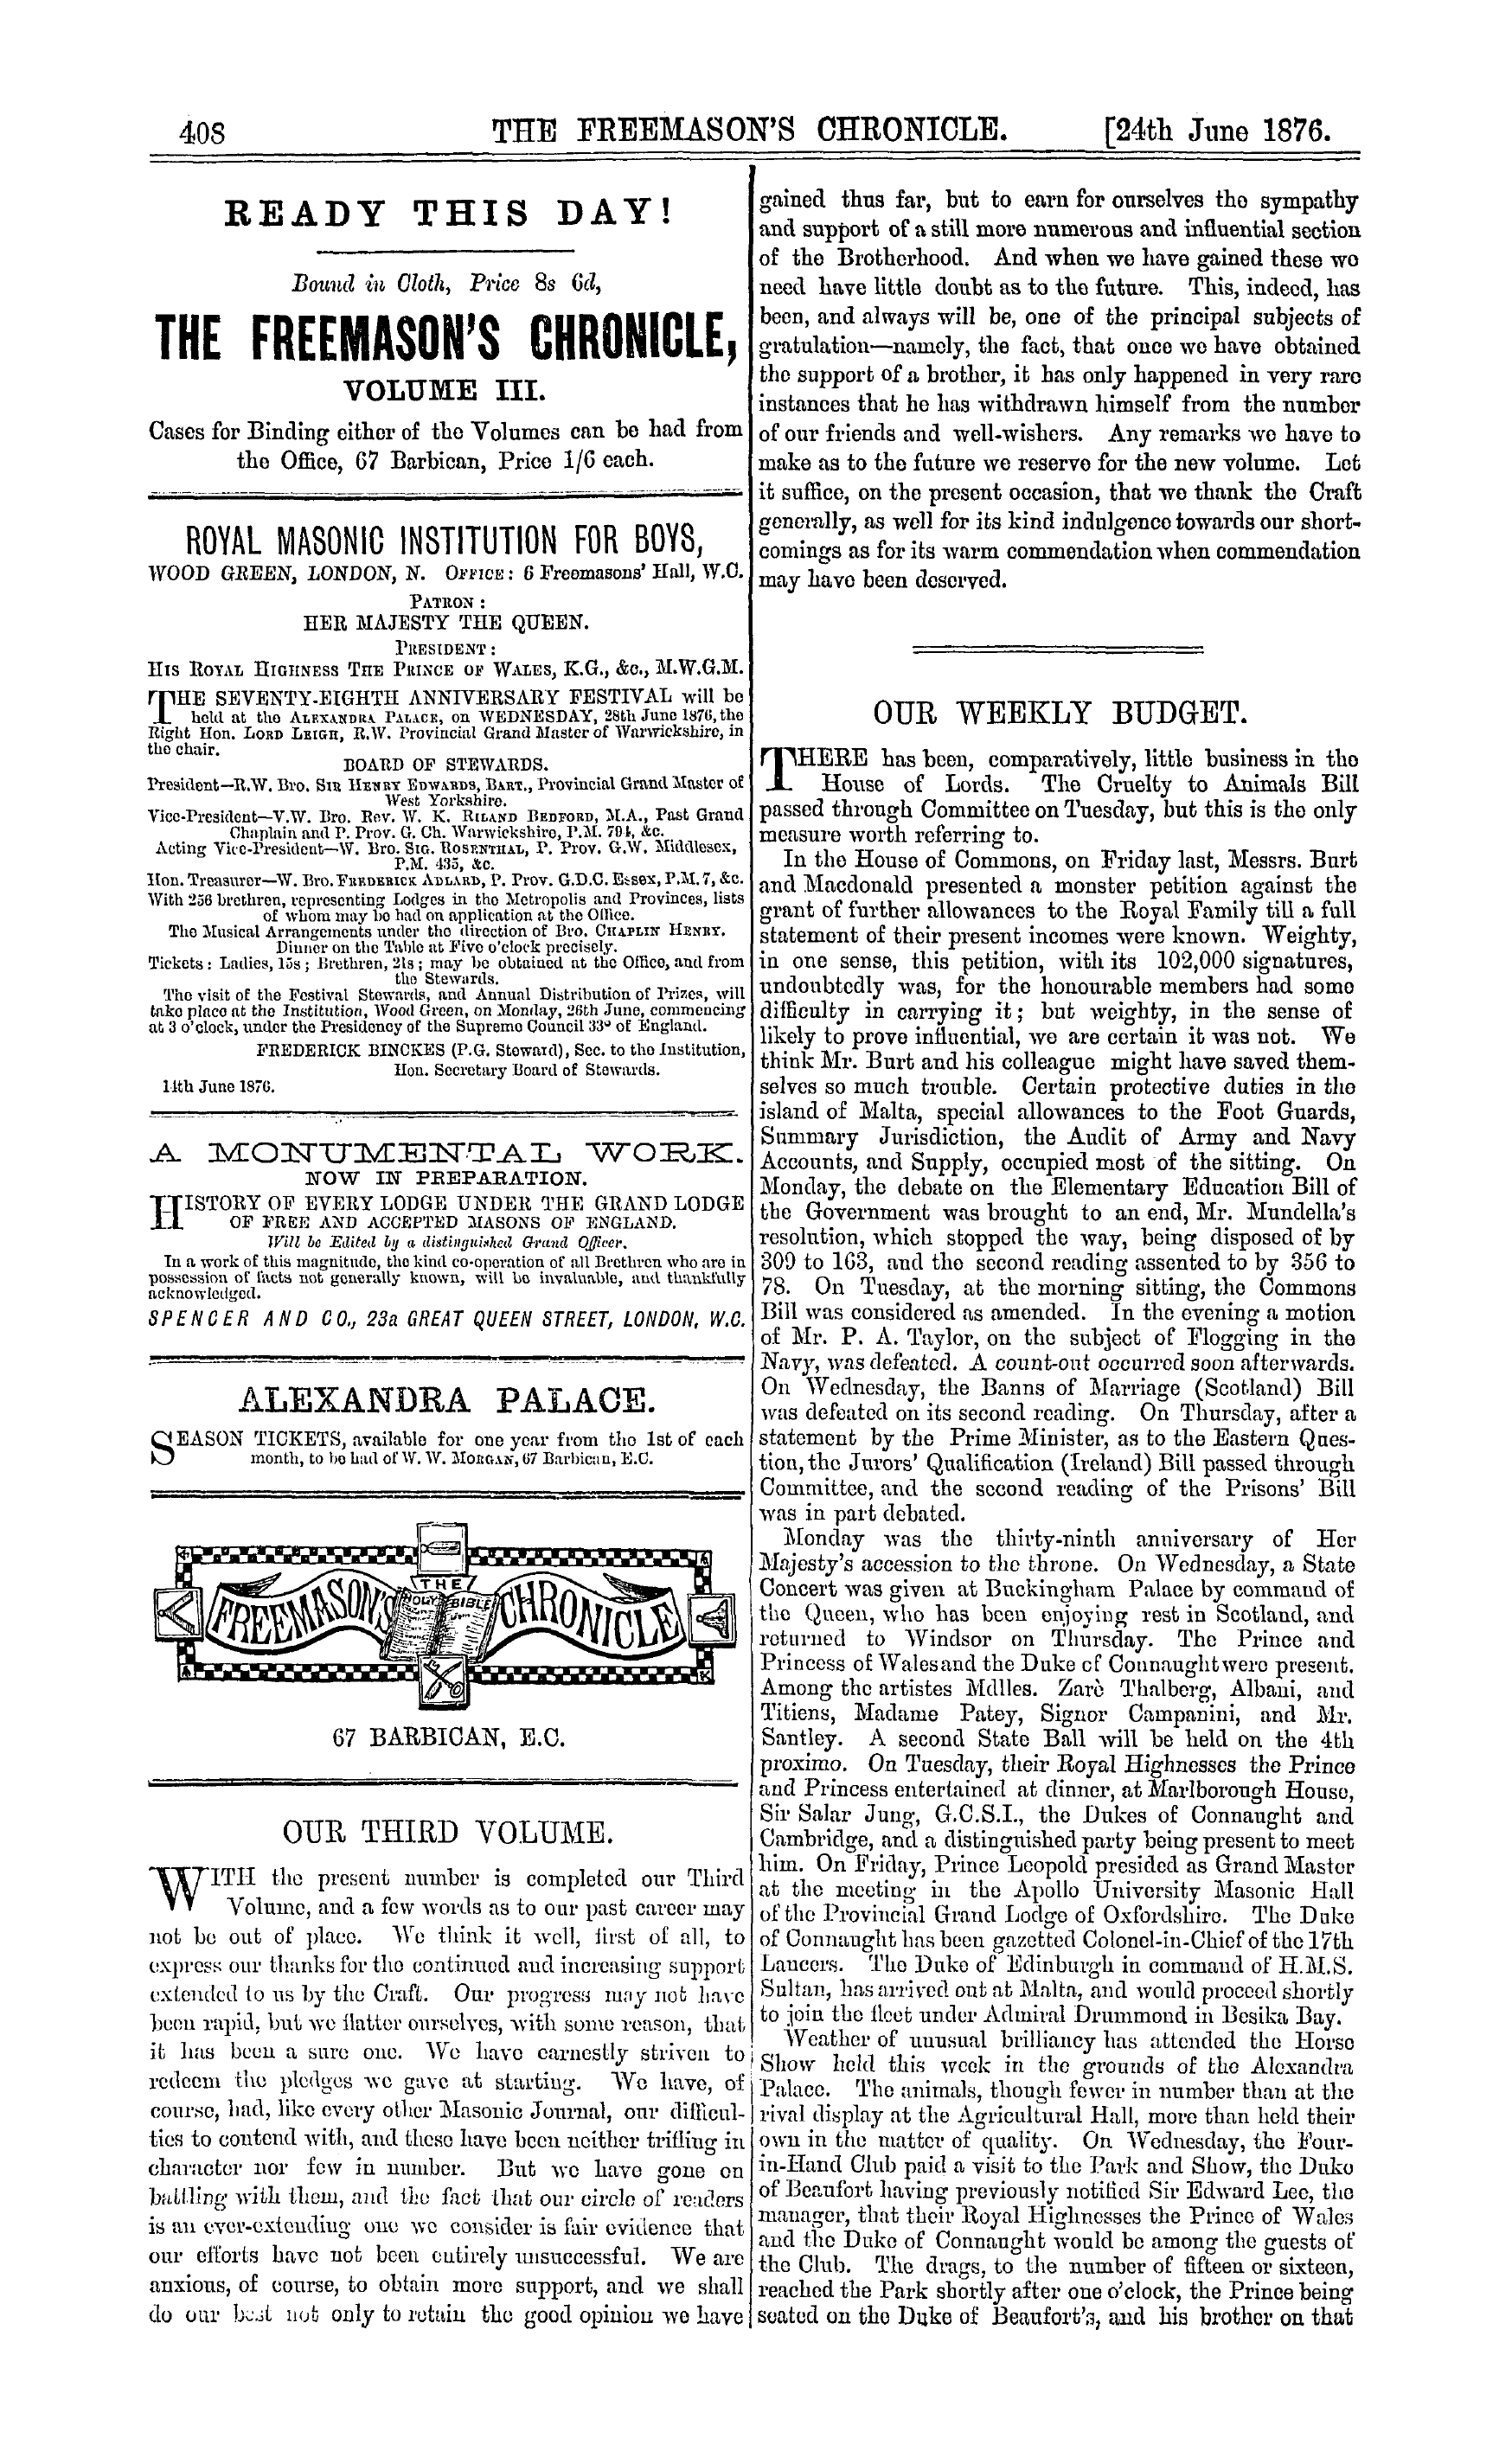 The Freemason's Chronicle: 1876-06-24 - Our Third Volume.